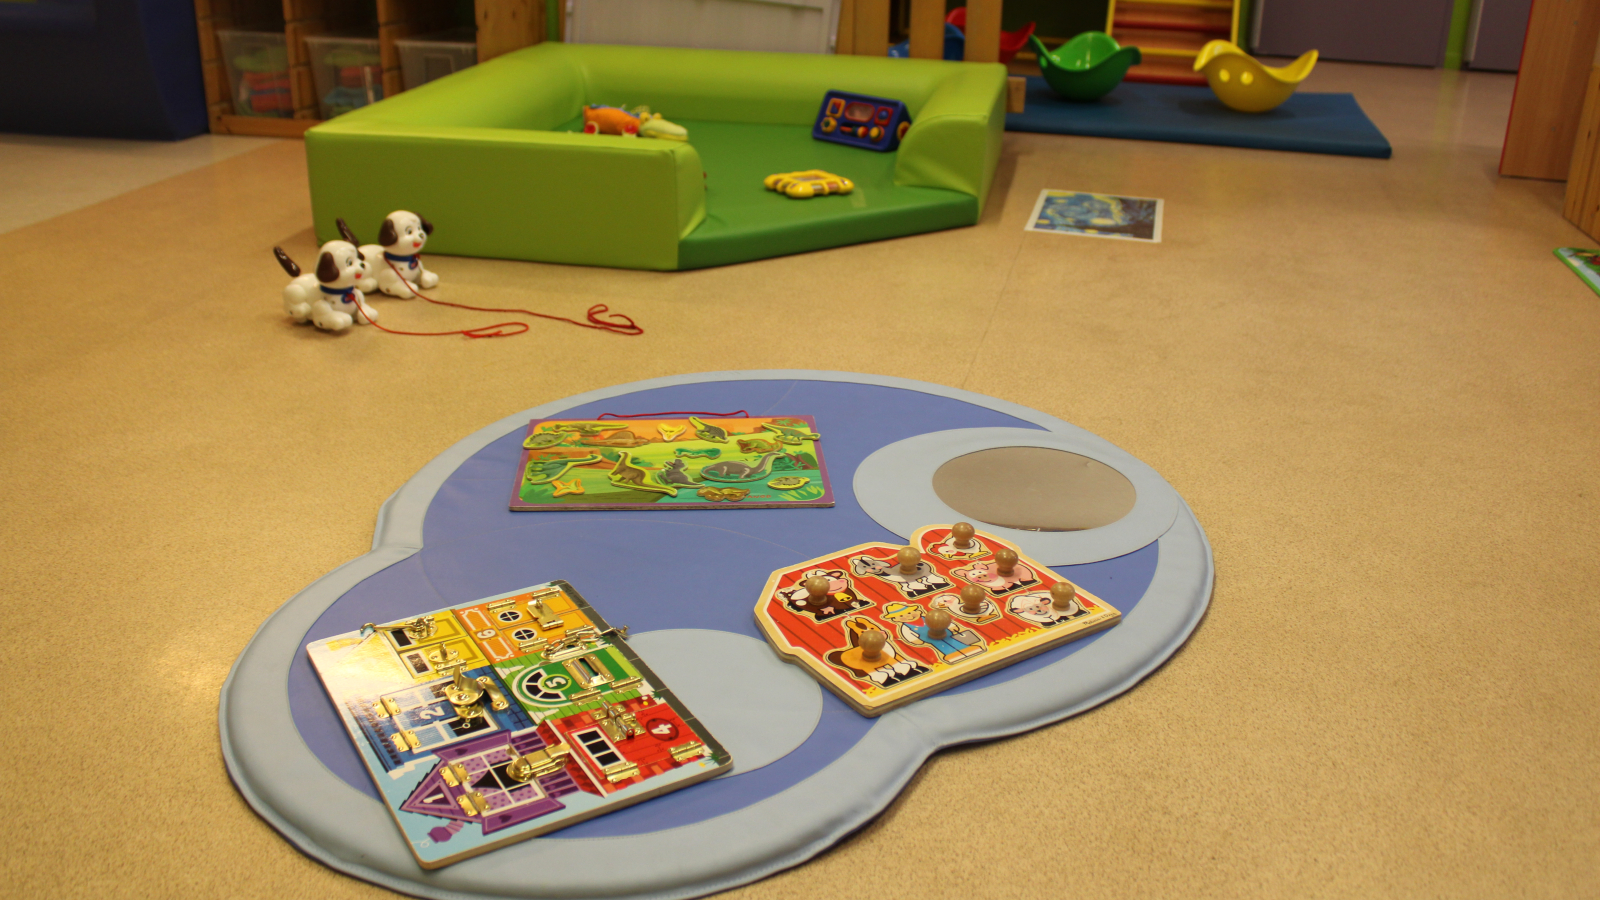 Zone de jeux au sol avec tapis, jeu de puzzle, jeu d'éveil, jeu à bascule.